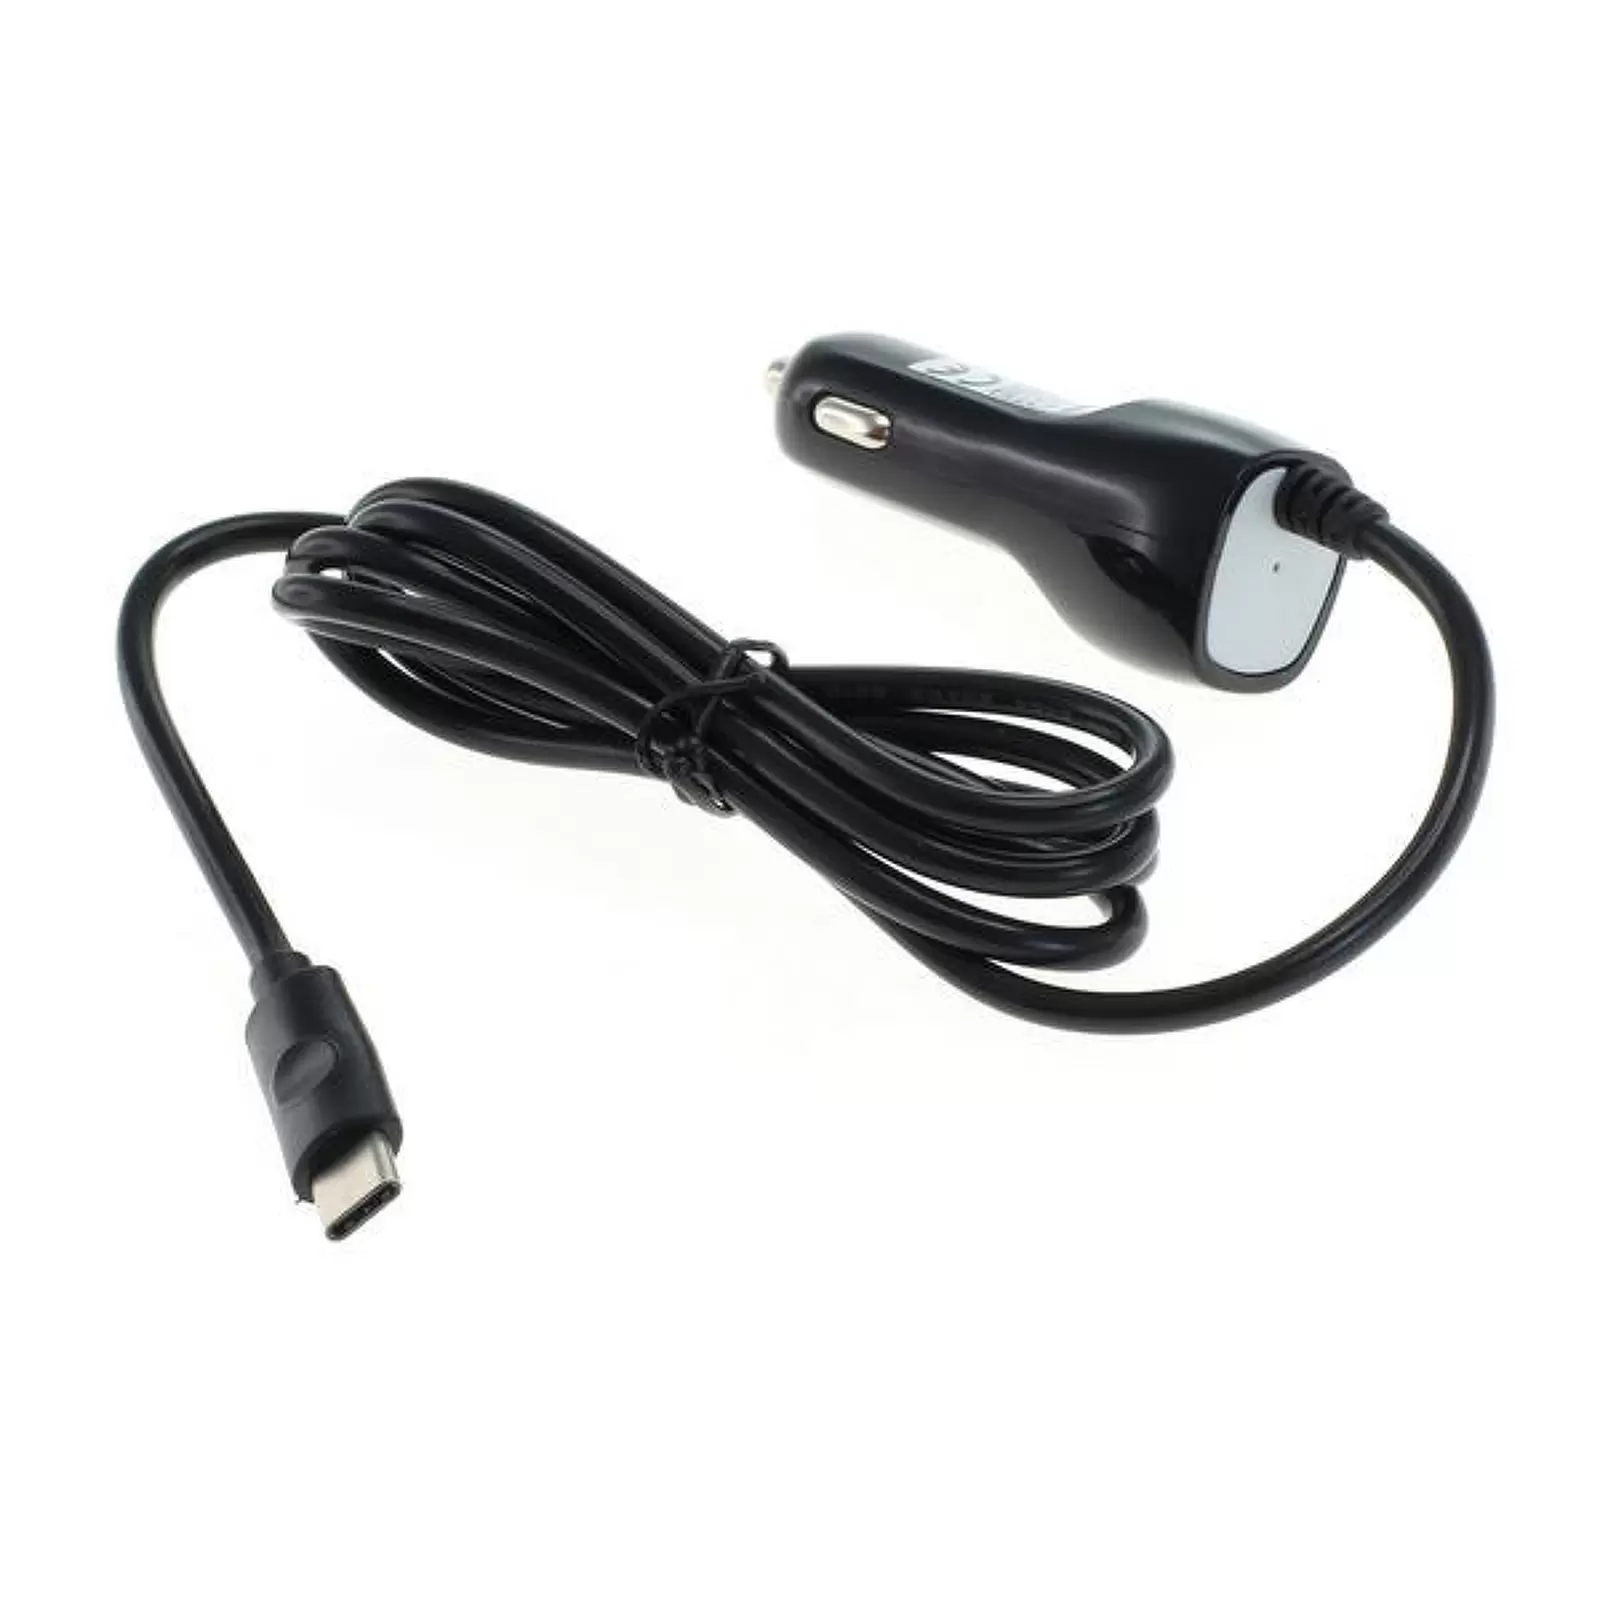 & Co. Handy für I Kfz-USB-Ladekabel